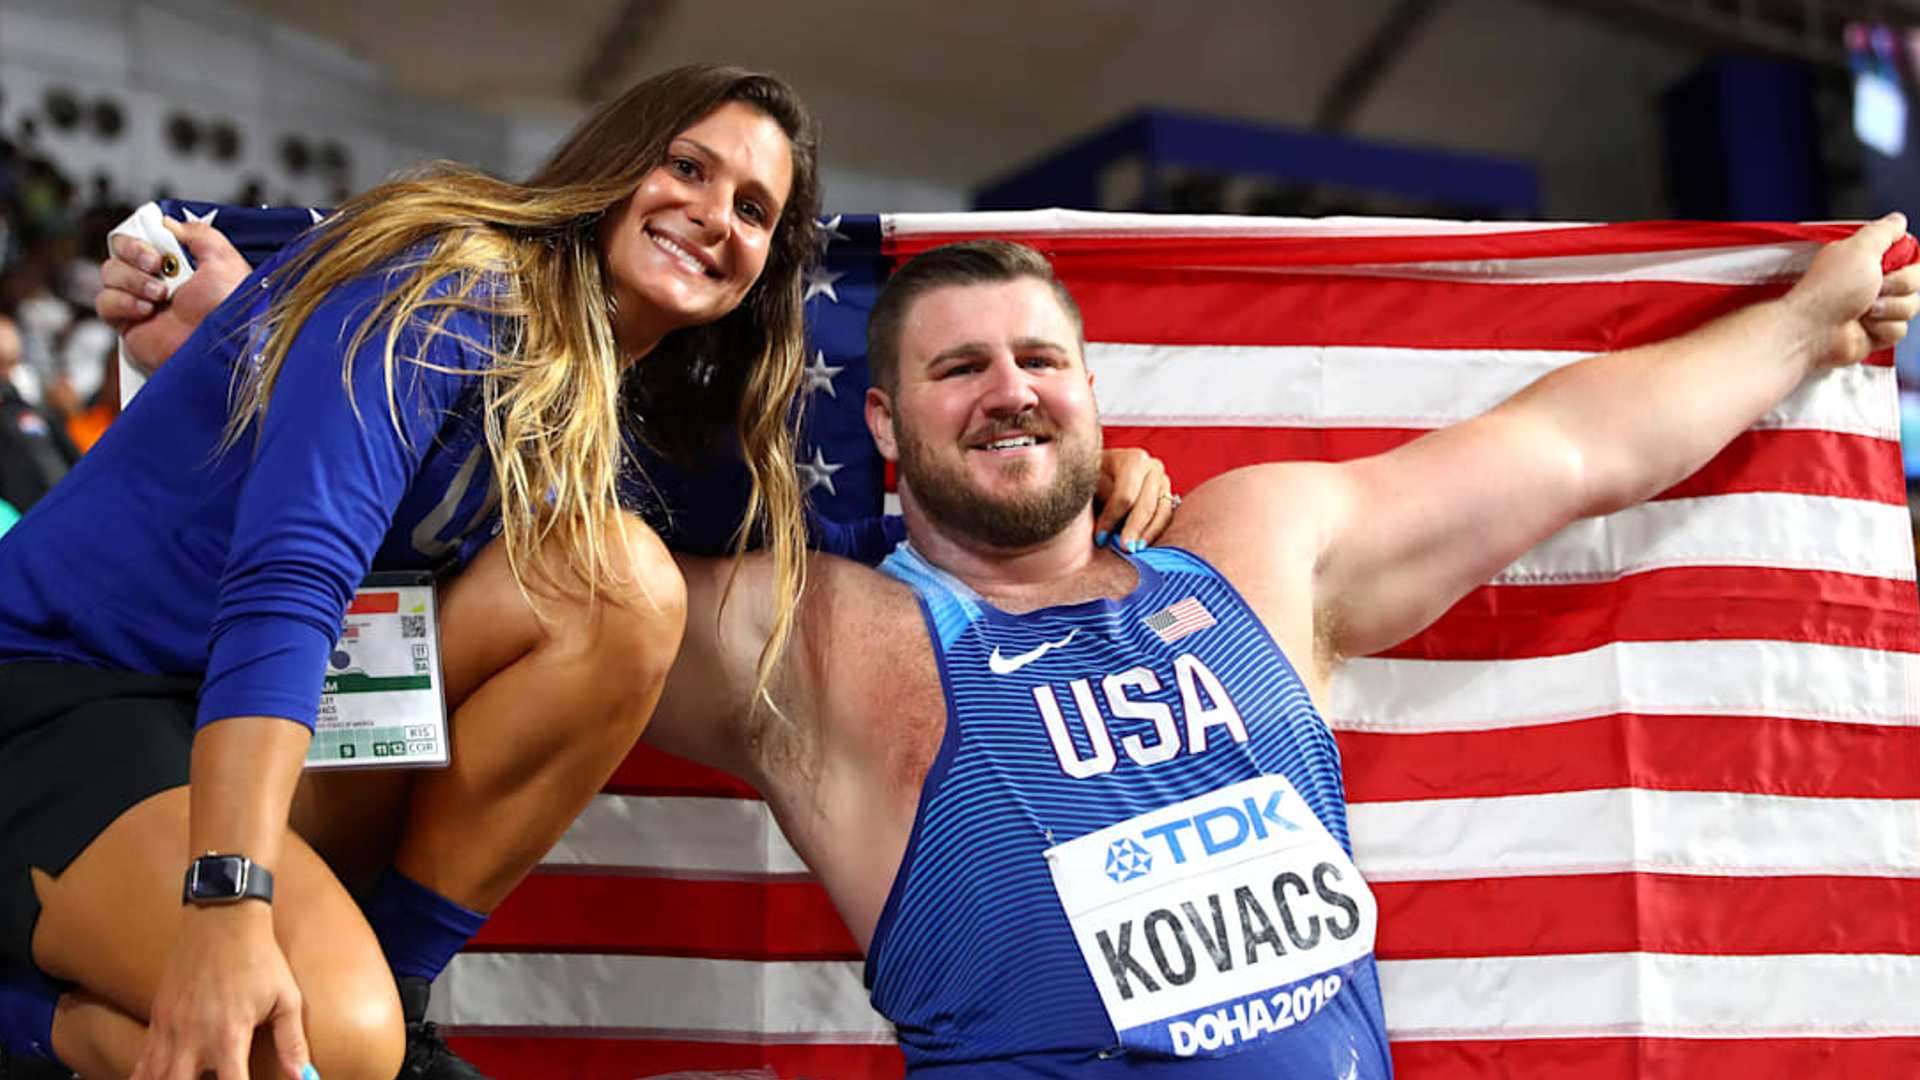 Joe Kovacs and his wife Ashley Kovacs (Image Credits - World Athletics)